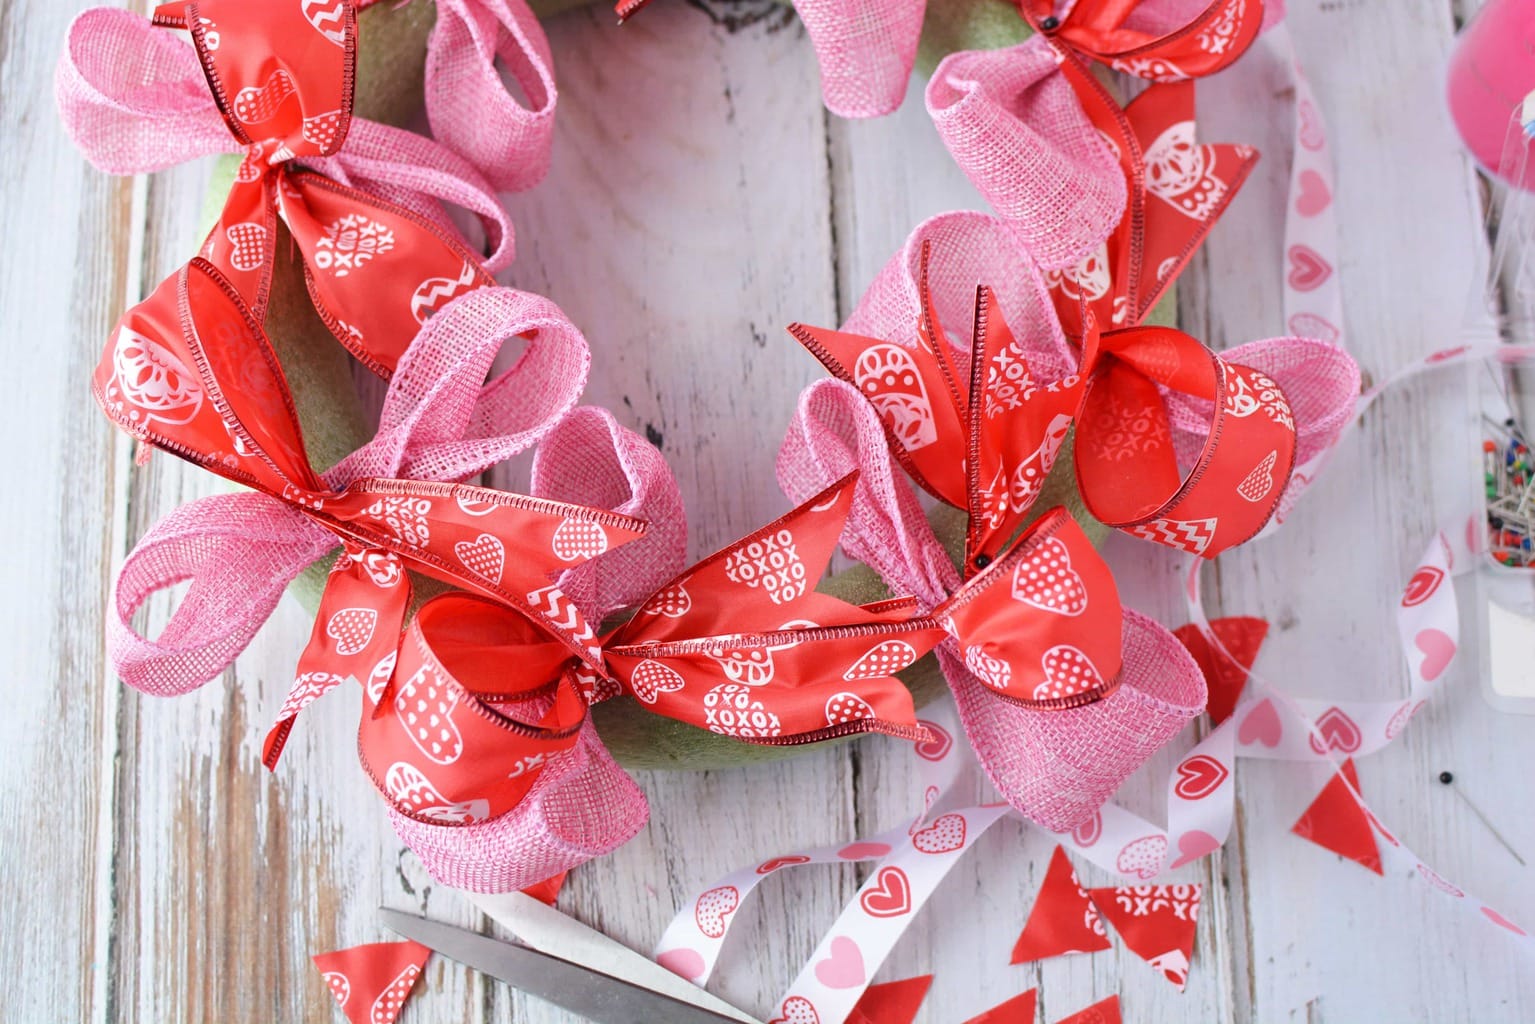 Valentine's Day Wreath, DIY Homemade Wreath, DIY Valentine's Day Wreath, Valentine's Day Crafts, DIY Tutorial for Valentine's Day Wreath, DIY Wreath for Front door